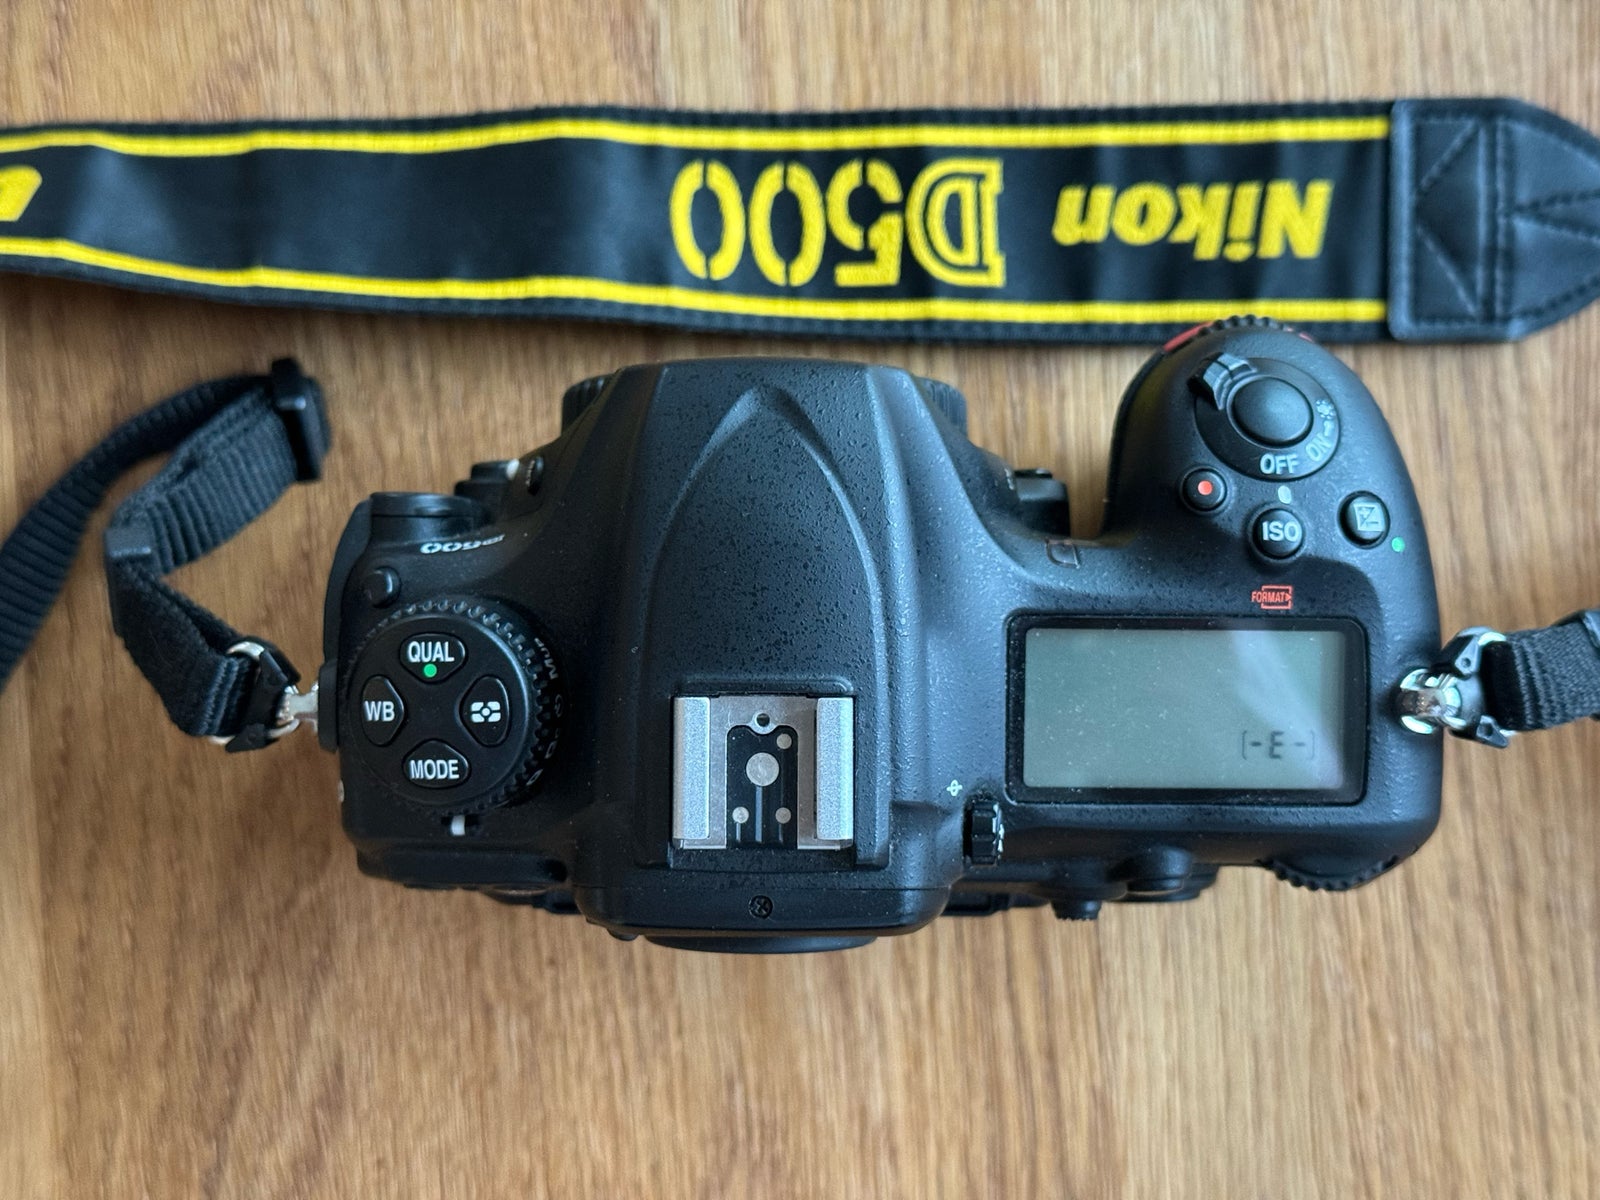 Nikon D500, spejlrefleks, 21 megapixels